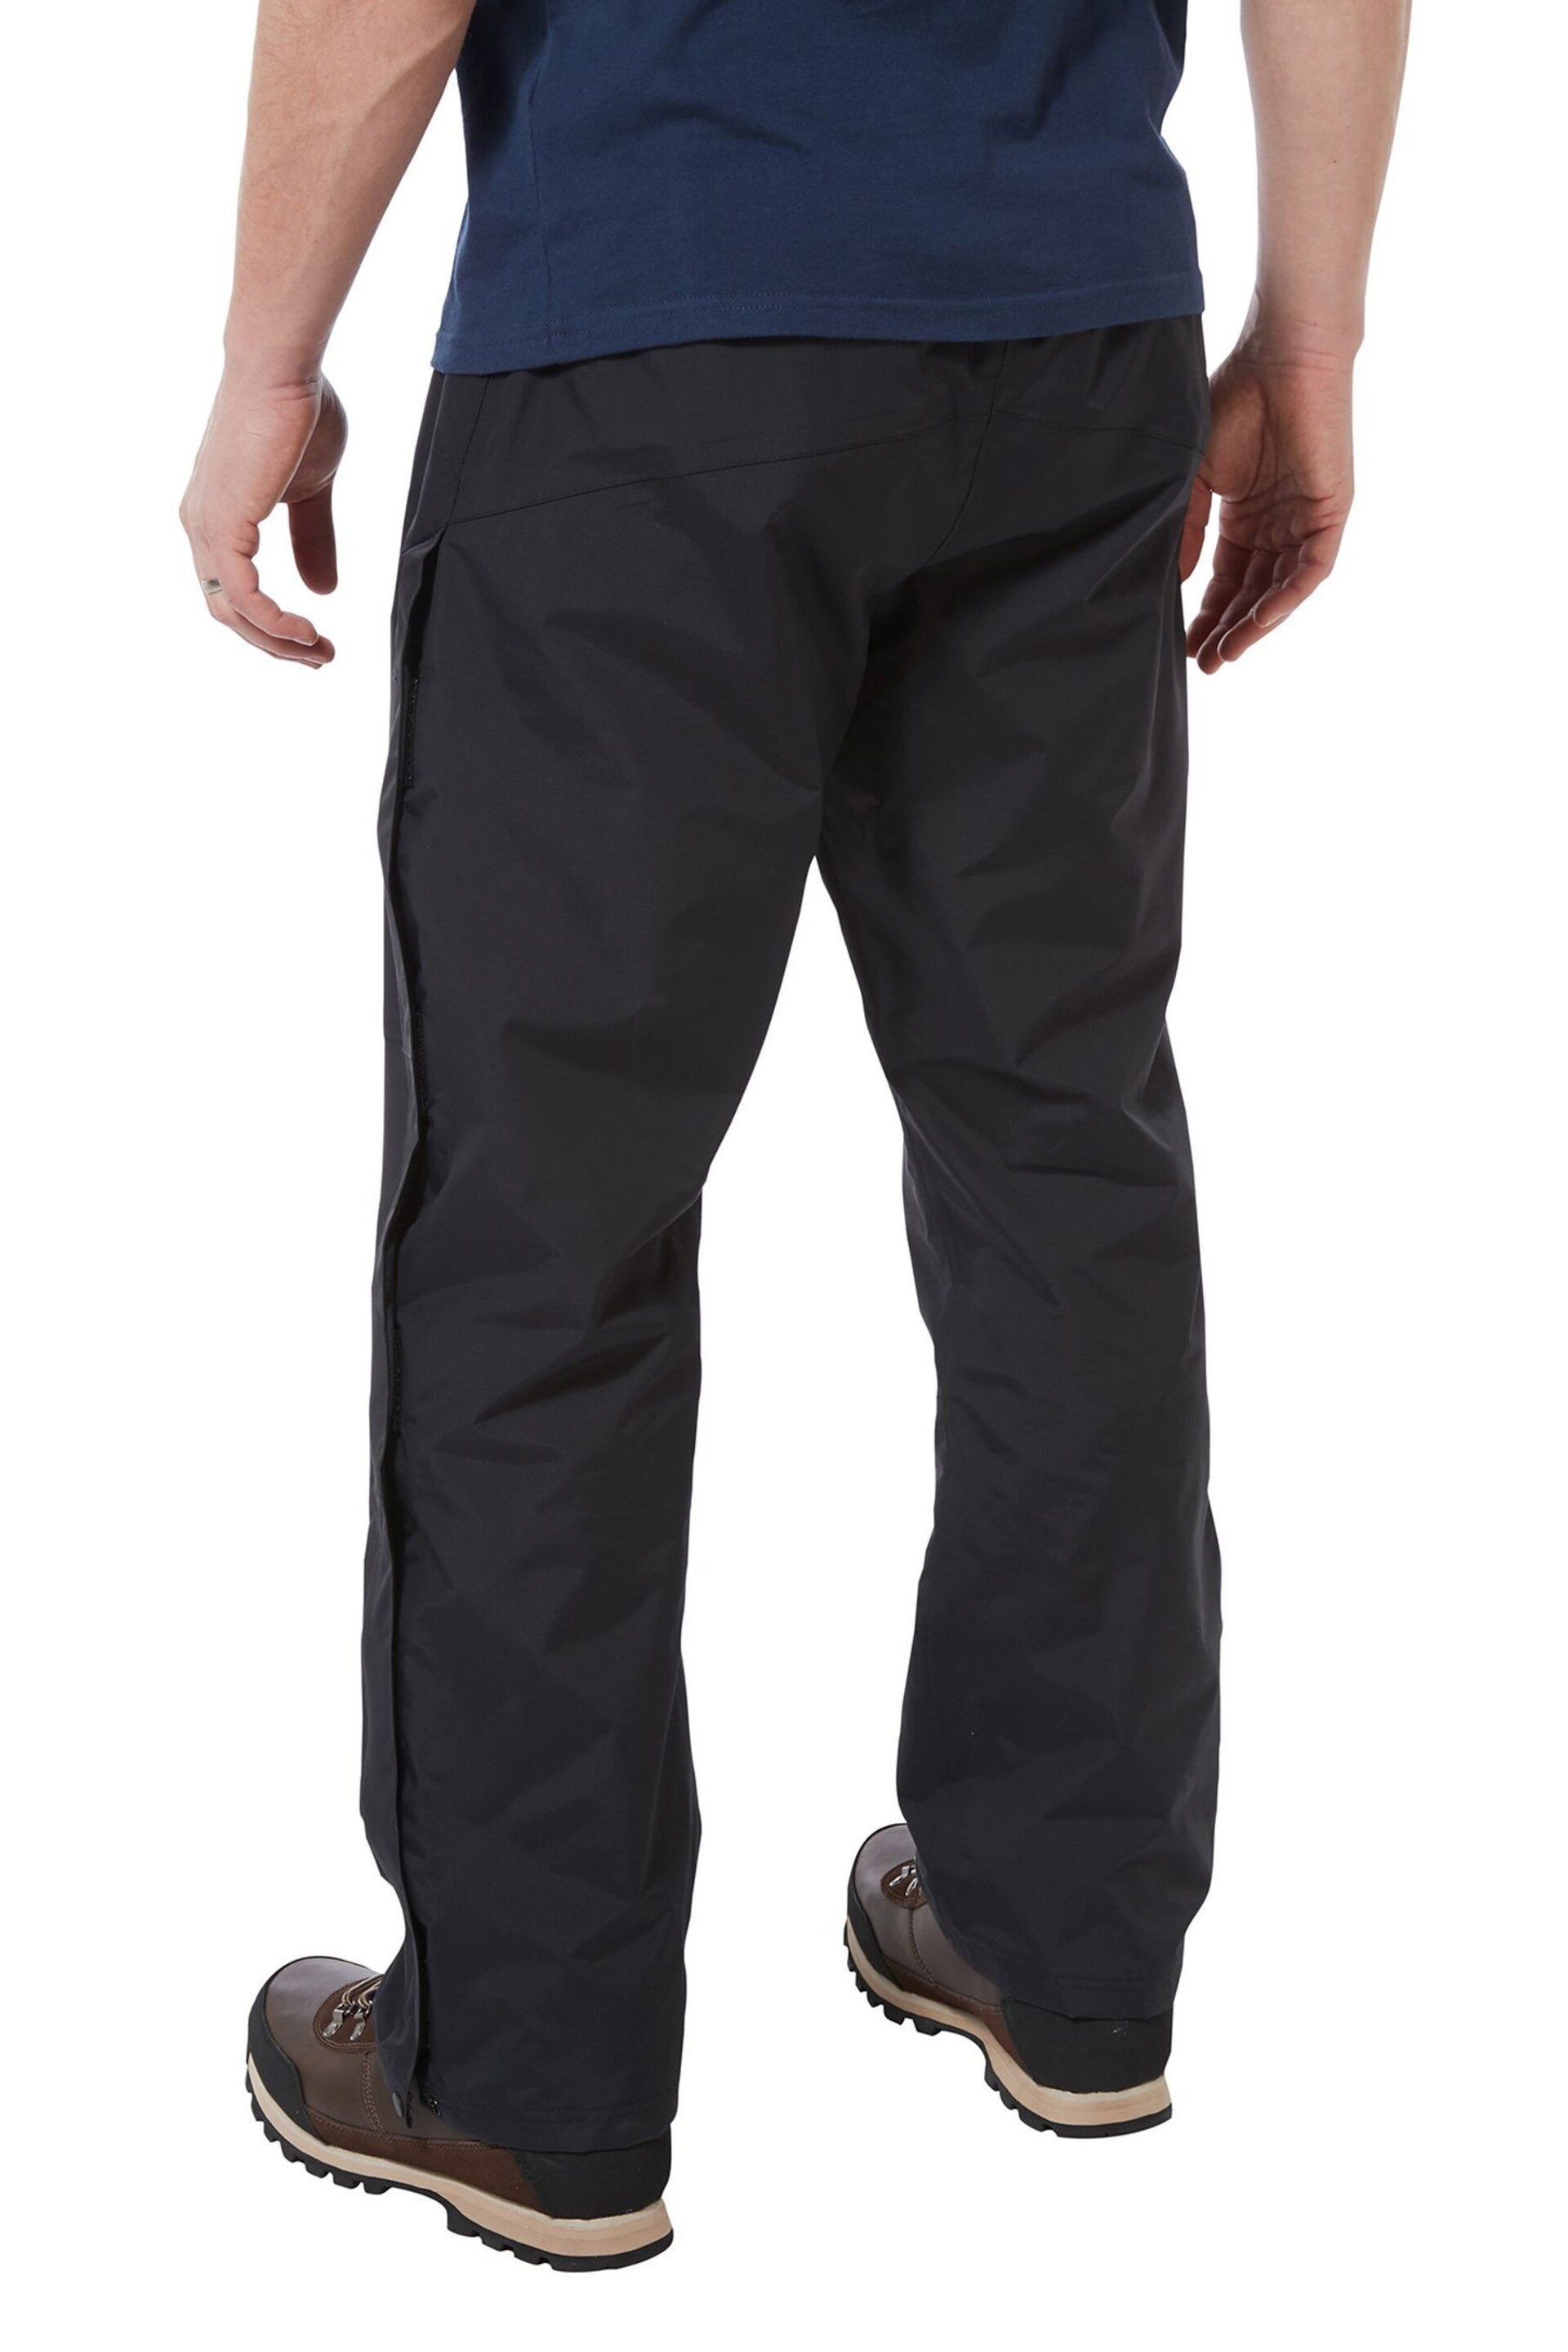 Tog 24 Black Steward Waterproof Trousers - Image 2 of 4